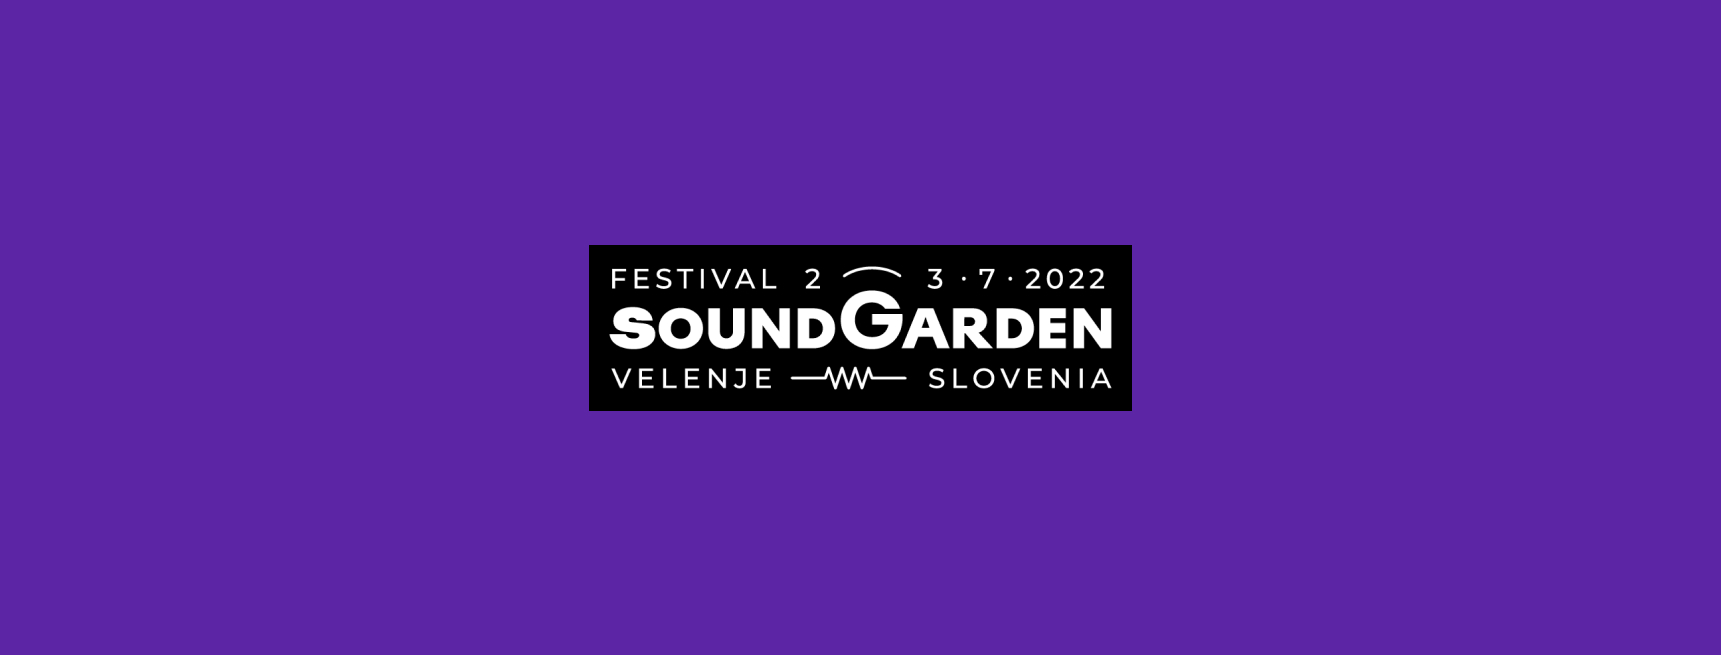 SoundGarden Festival 2022